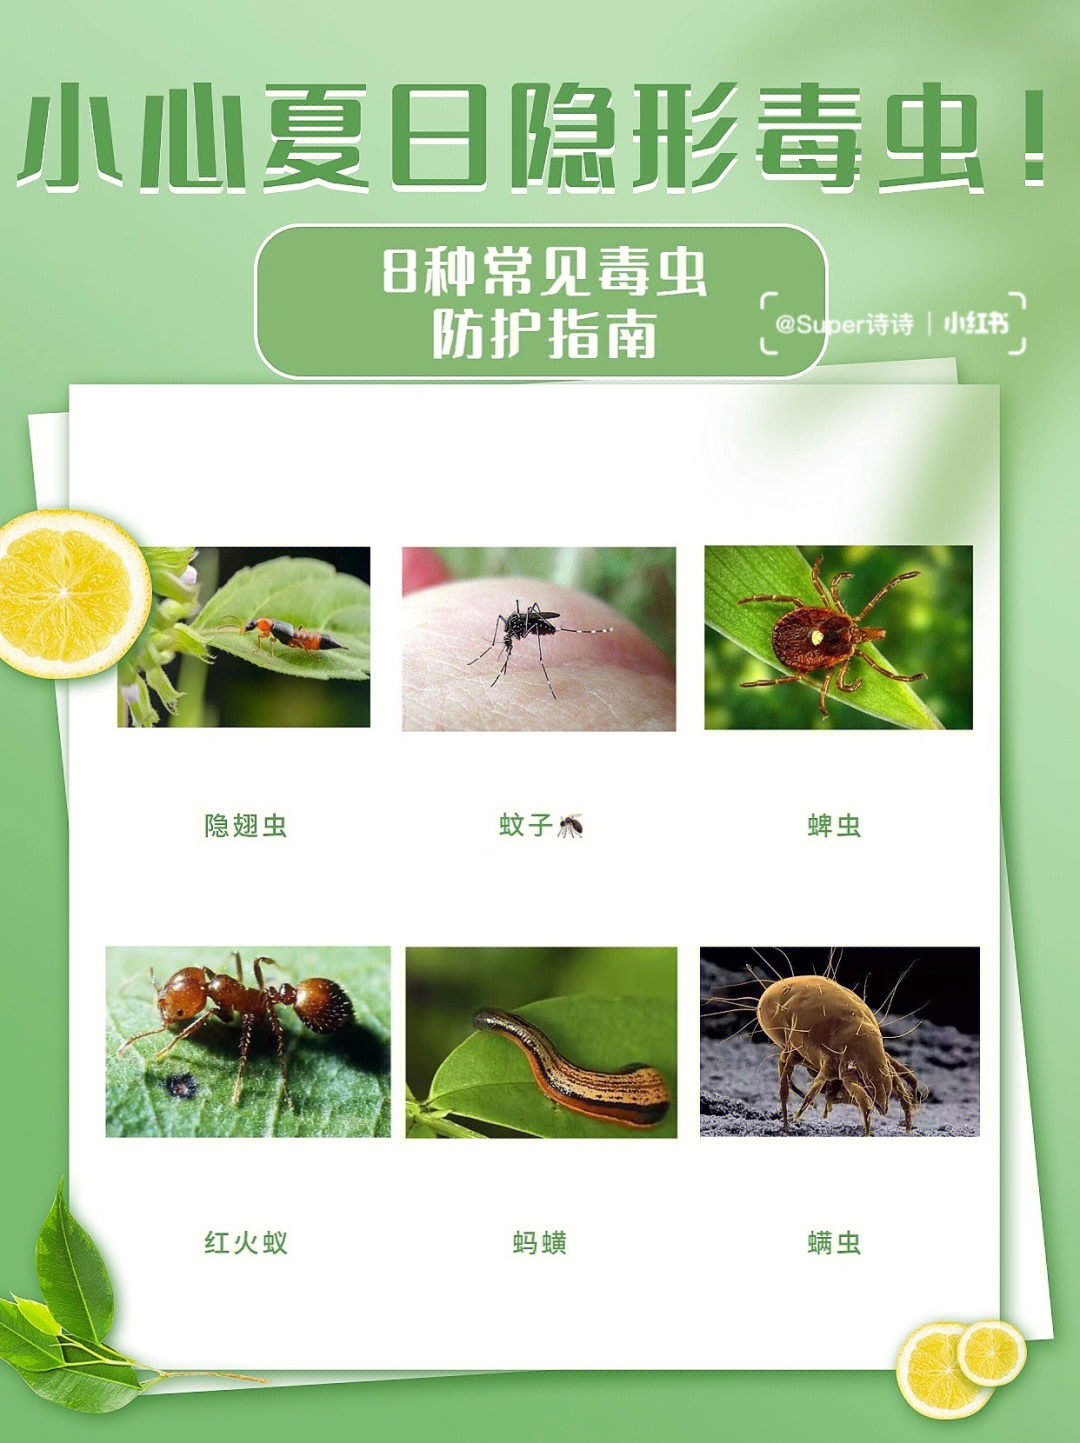 小心夏日常见8种毒虫附预防指南